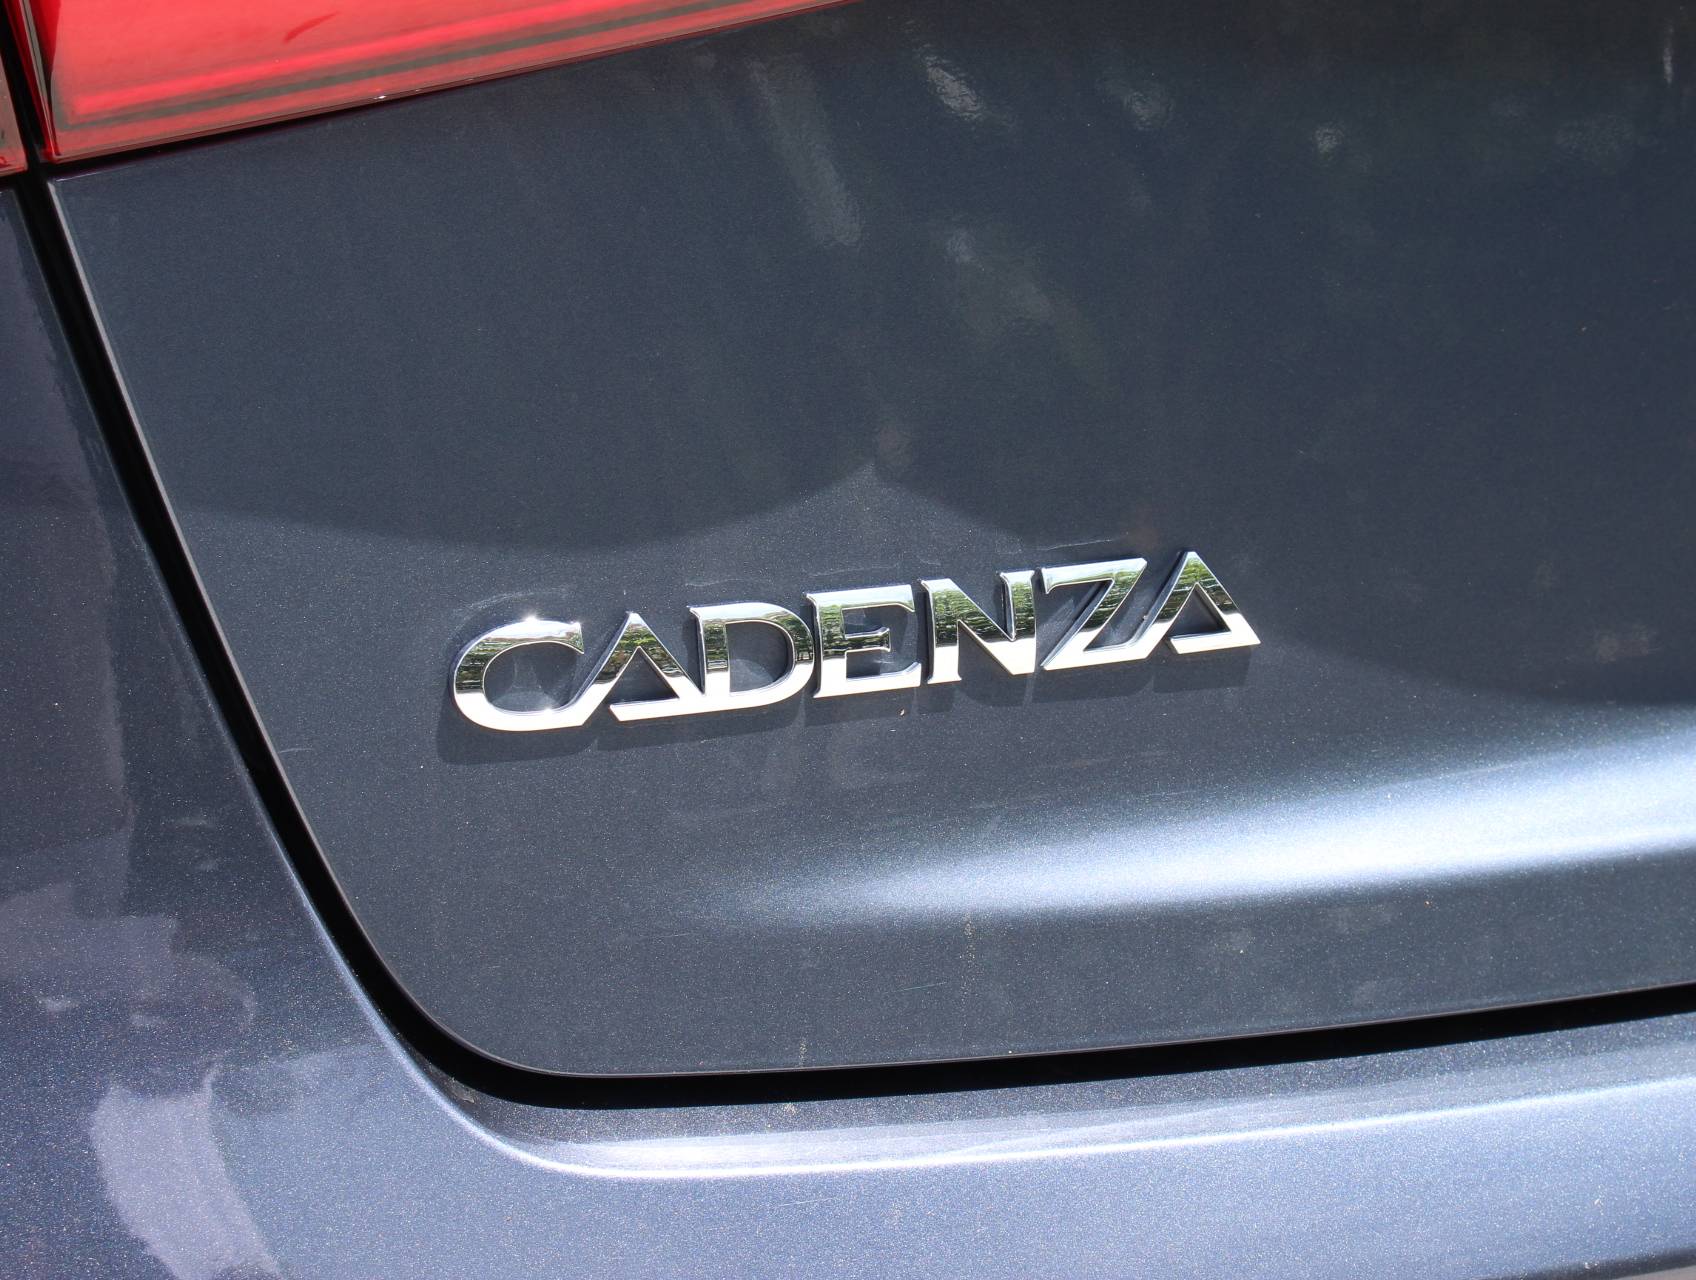 Florida Fine Cars - Used KIA CADENZA 2015 MARGATE Premium